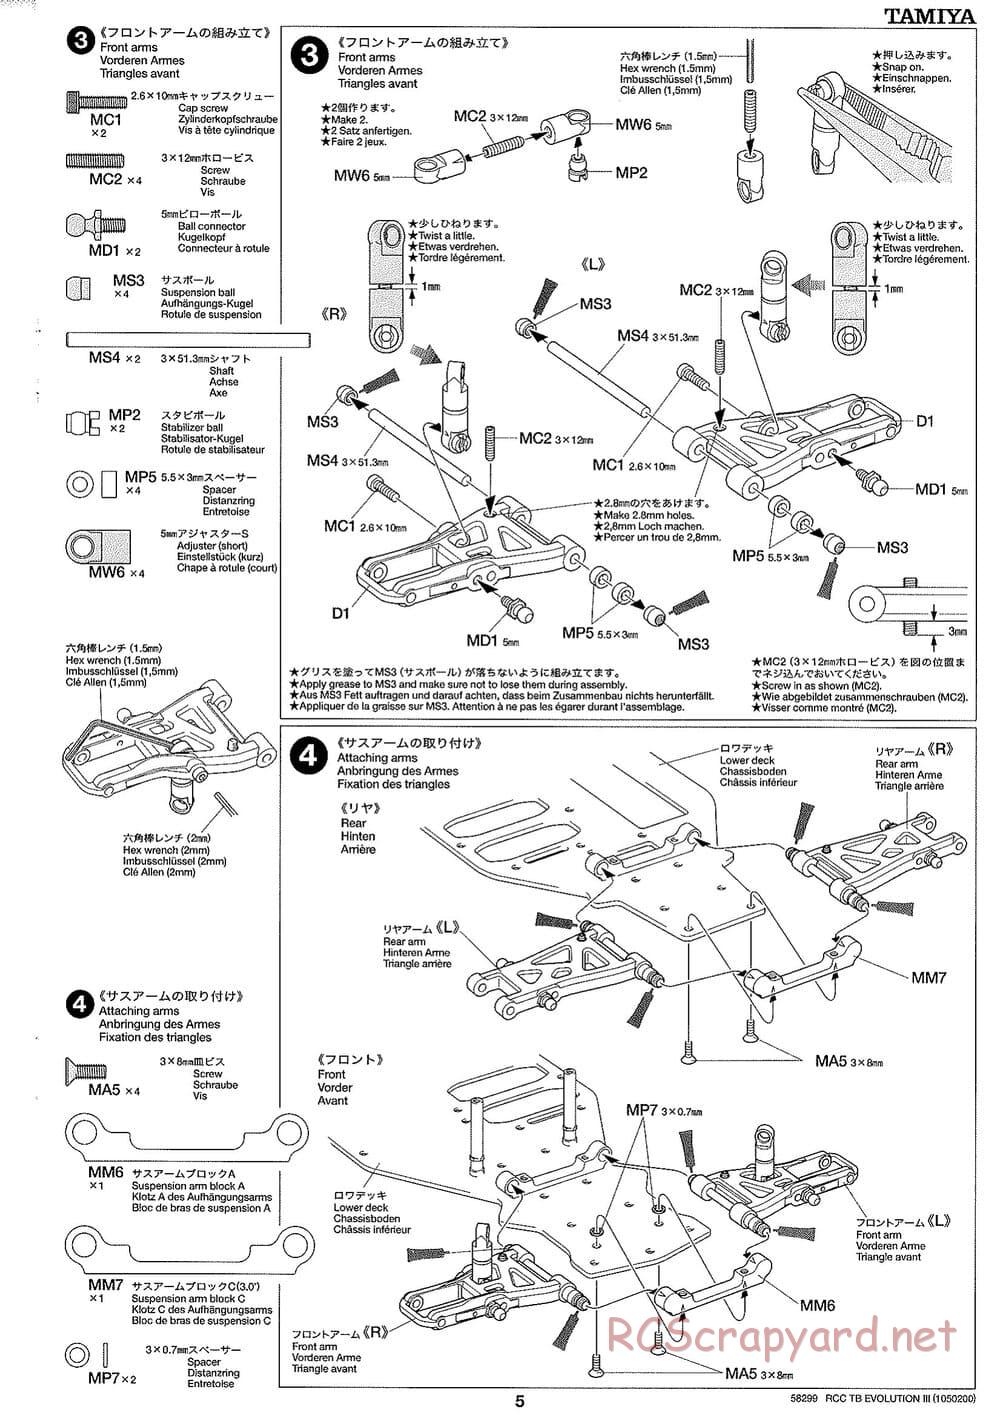 Tamiya - TB Evolution III Chassis - Manual - Page 6